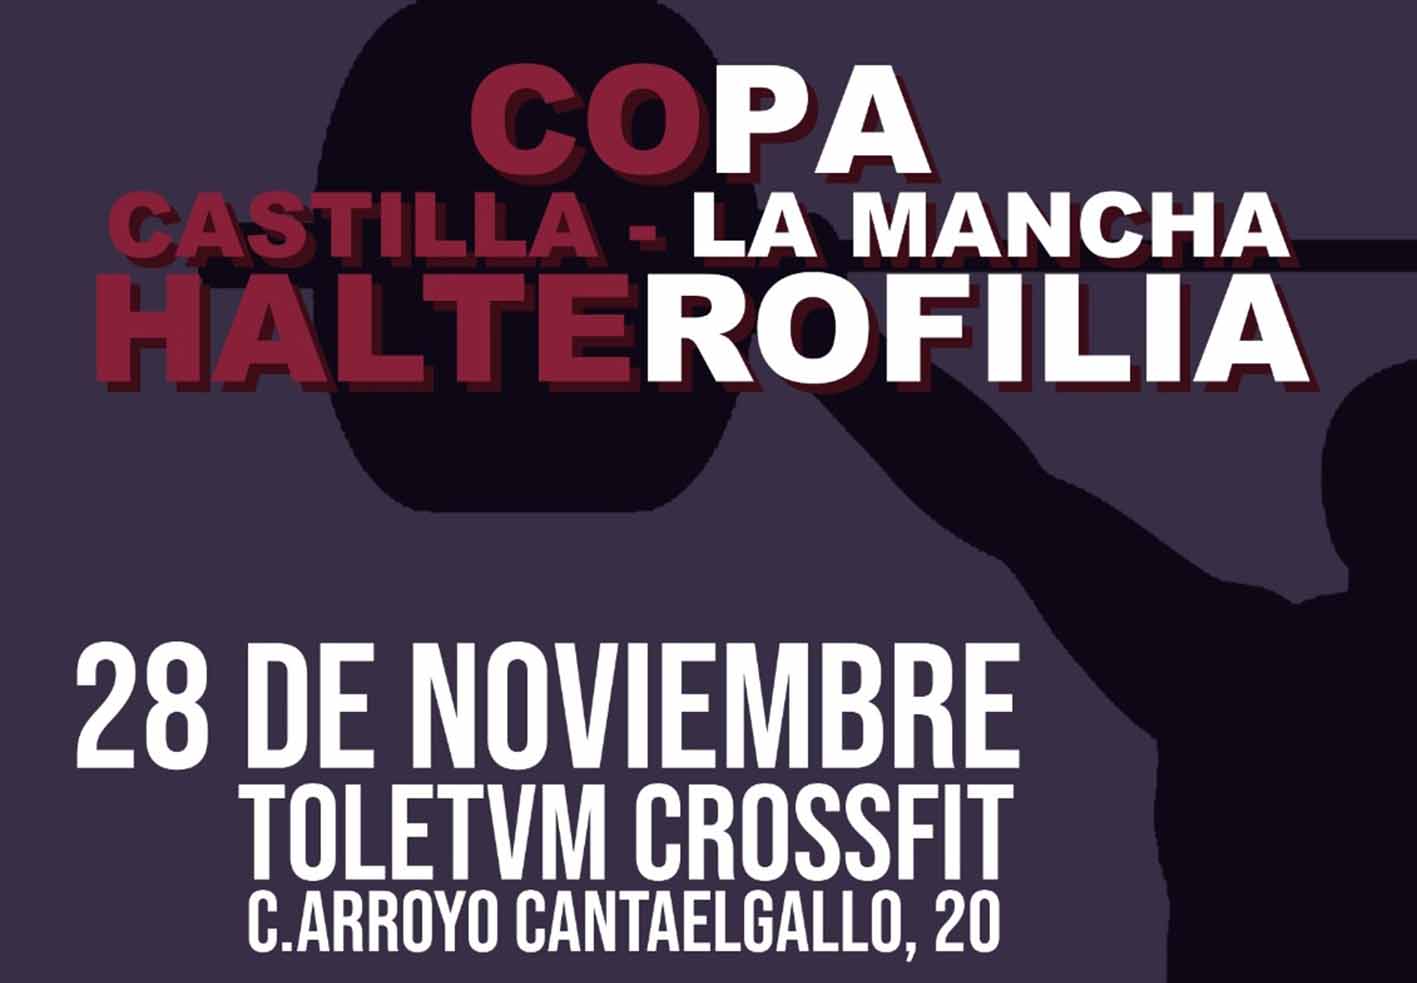 Fragmento del cartel de la Copa de Castilla-La Mancha de halterofilia.